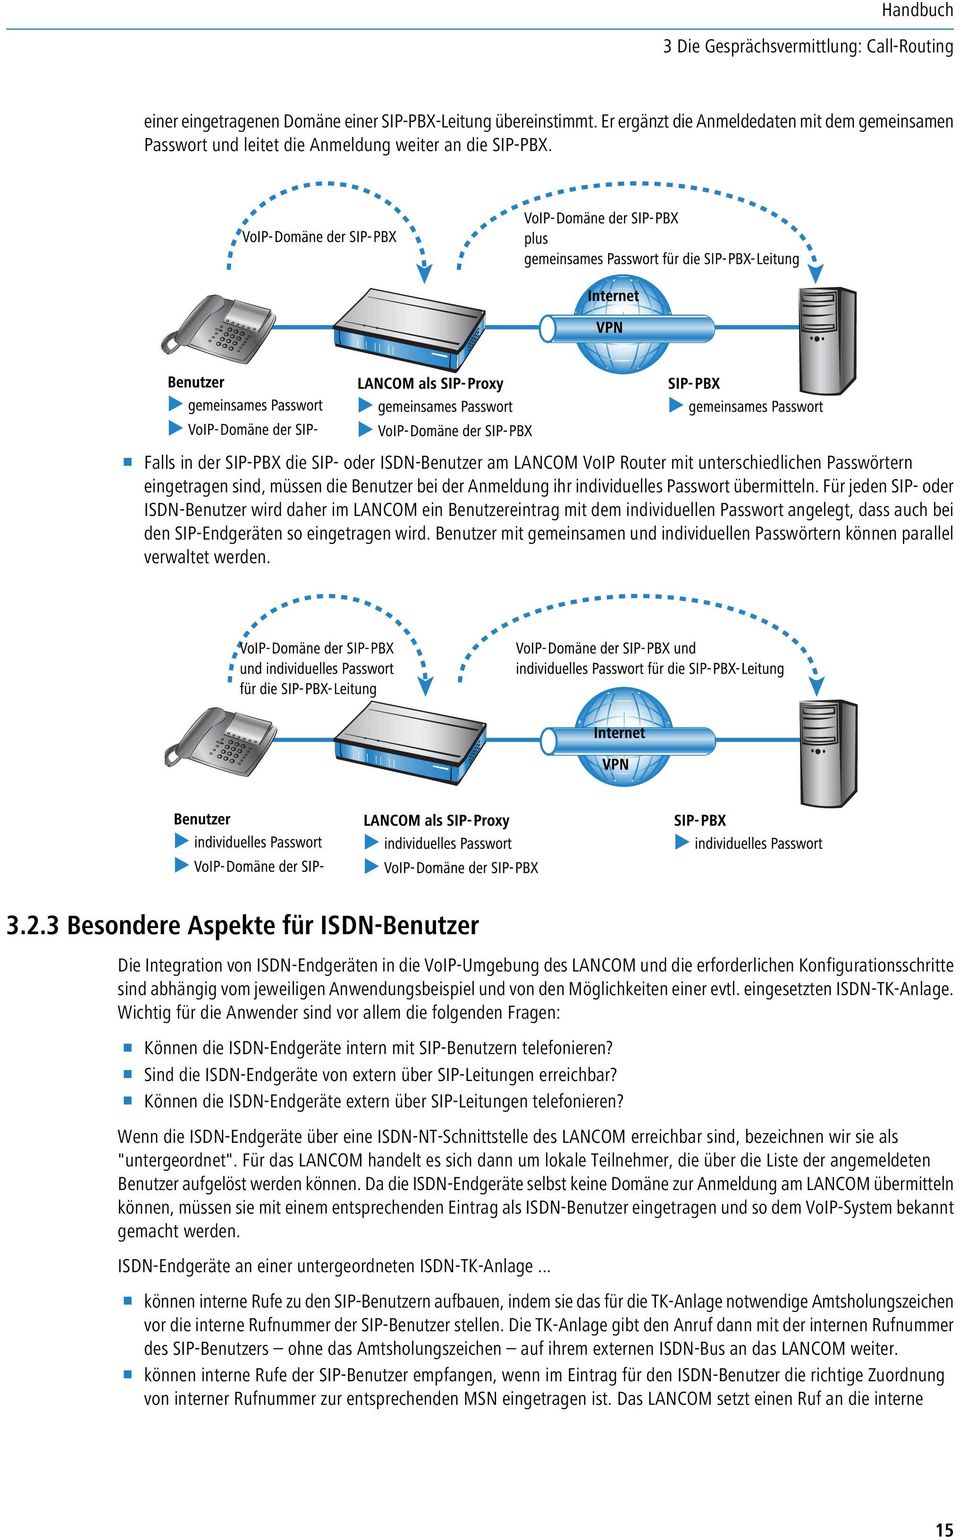 1 Falls in der SIP-PBX die SIP- oder ISDN-Benutzer am LANCOM VoIP Router mit unterschiedlichen Passwörtern eingetragen sind, müssen die Benutzer bei der Anmeldung ihr individuelles Passwort